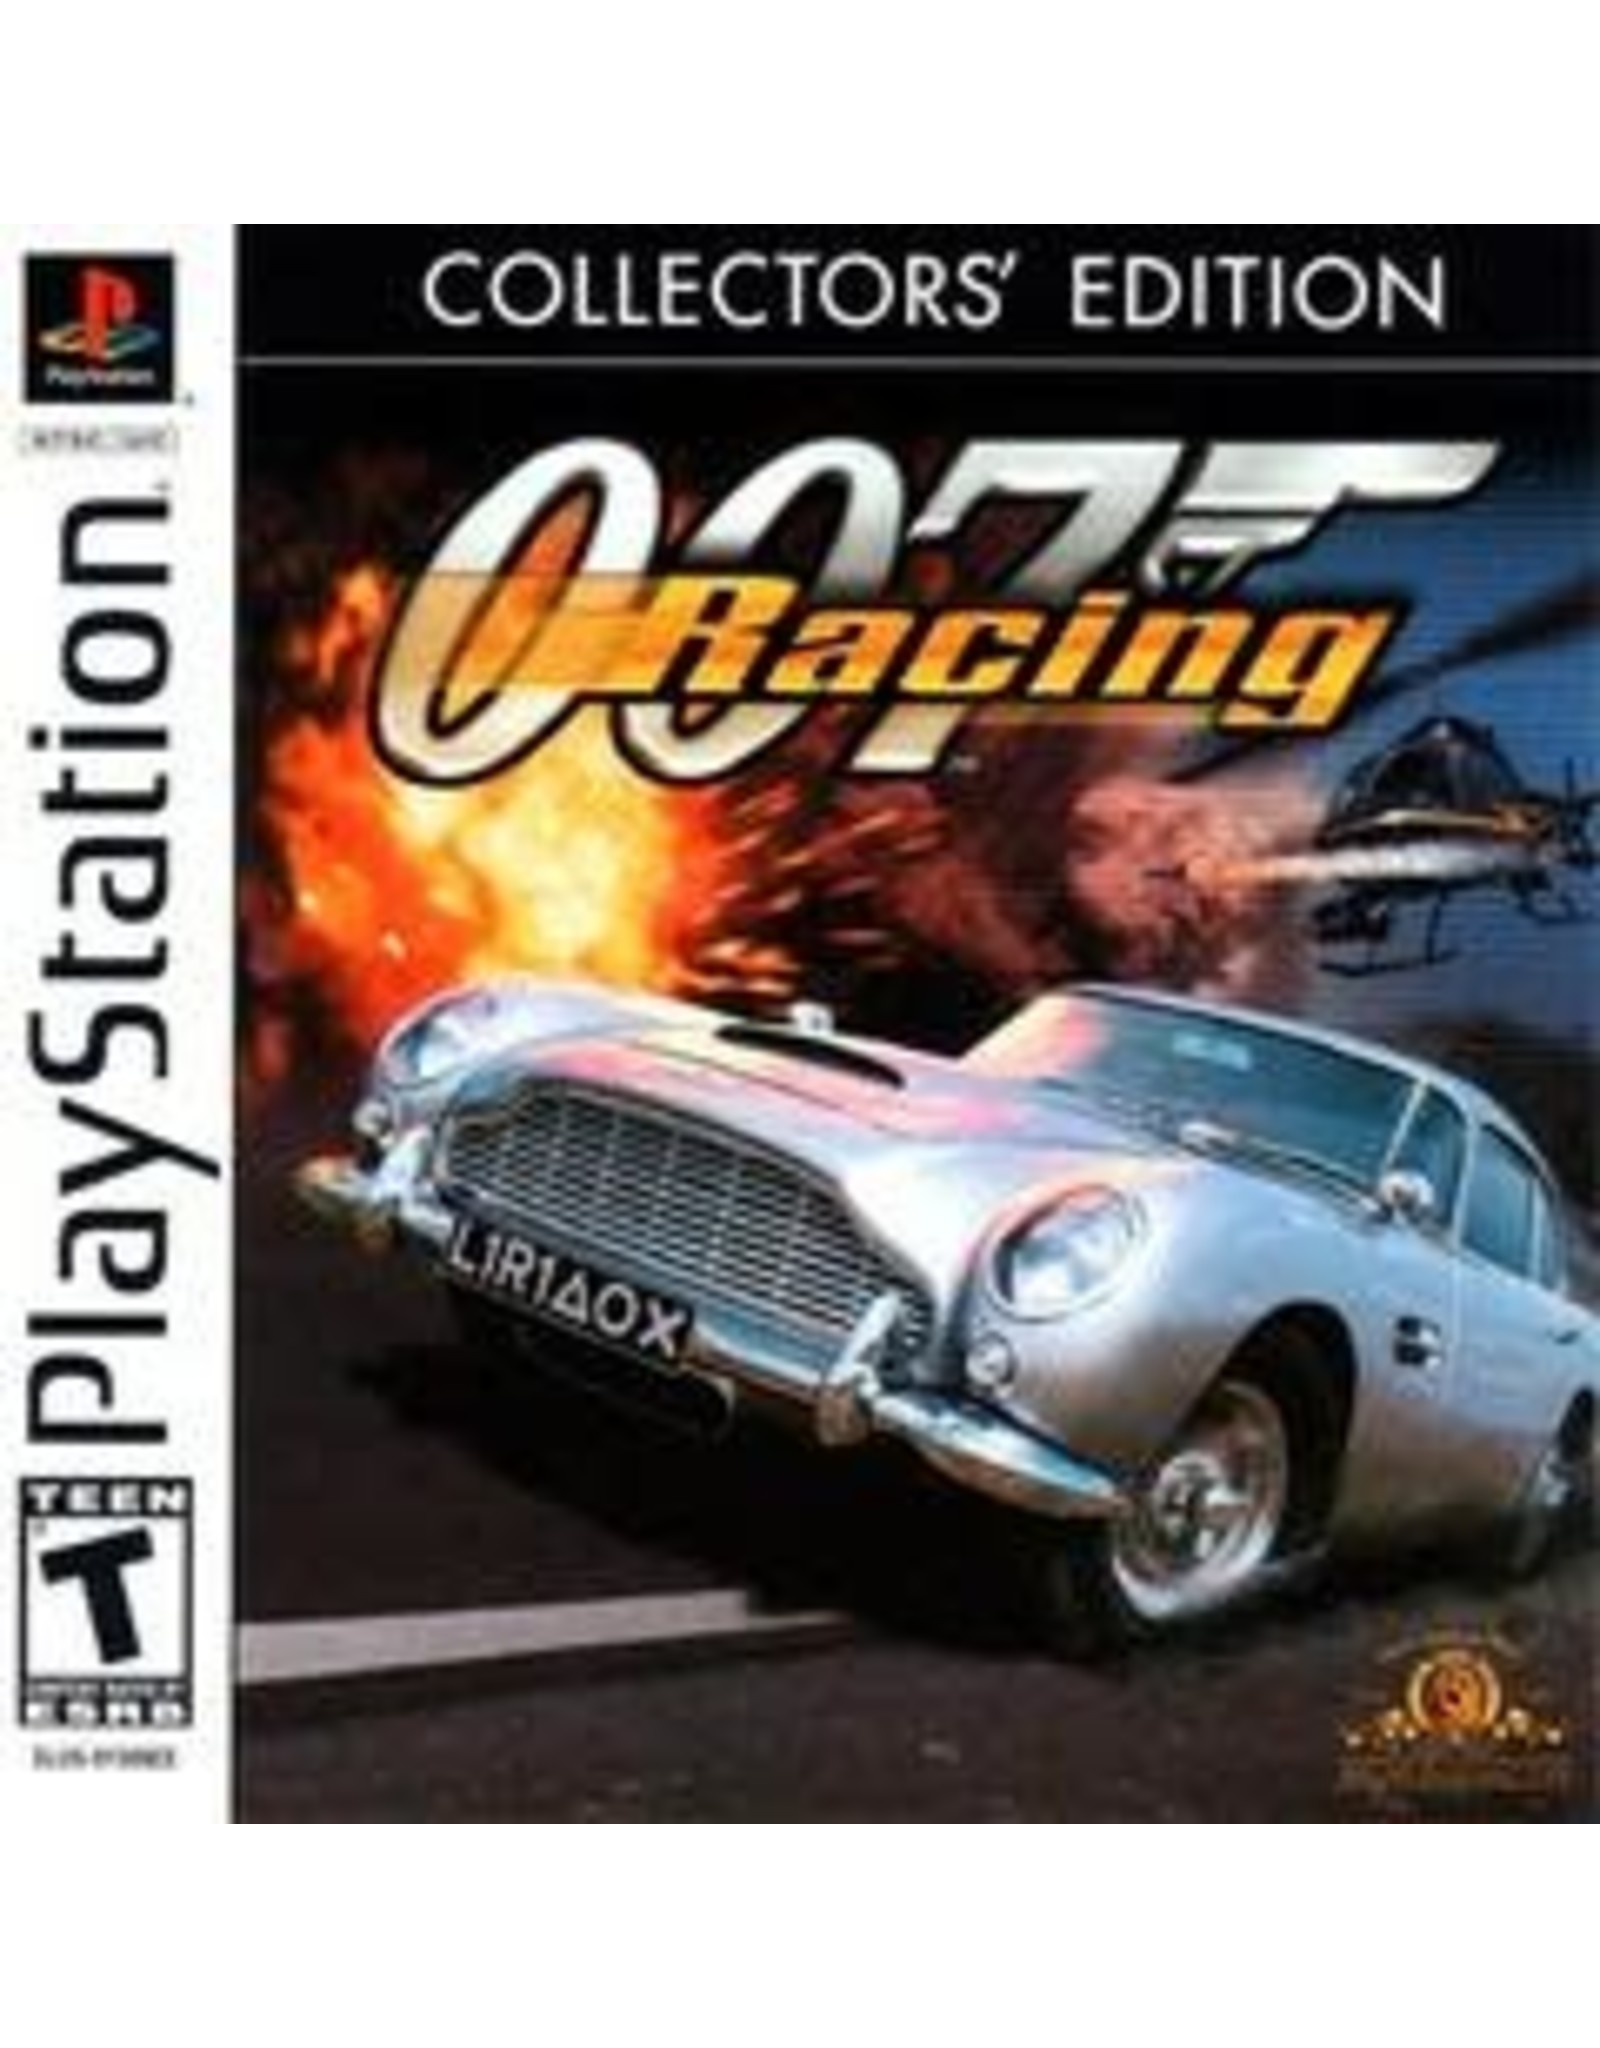 Playstation 007 Racing (Collector's Edition, CiB)